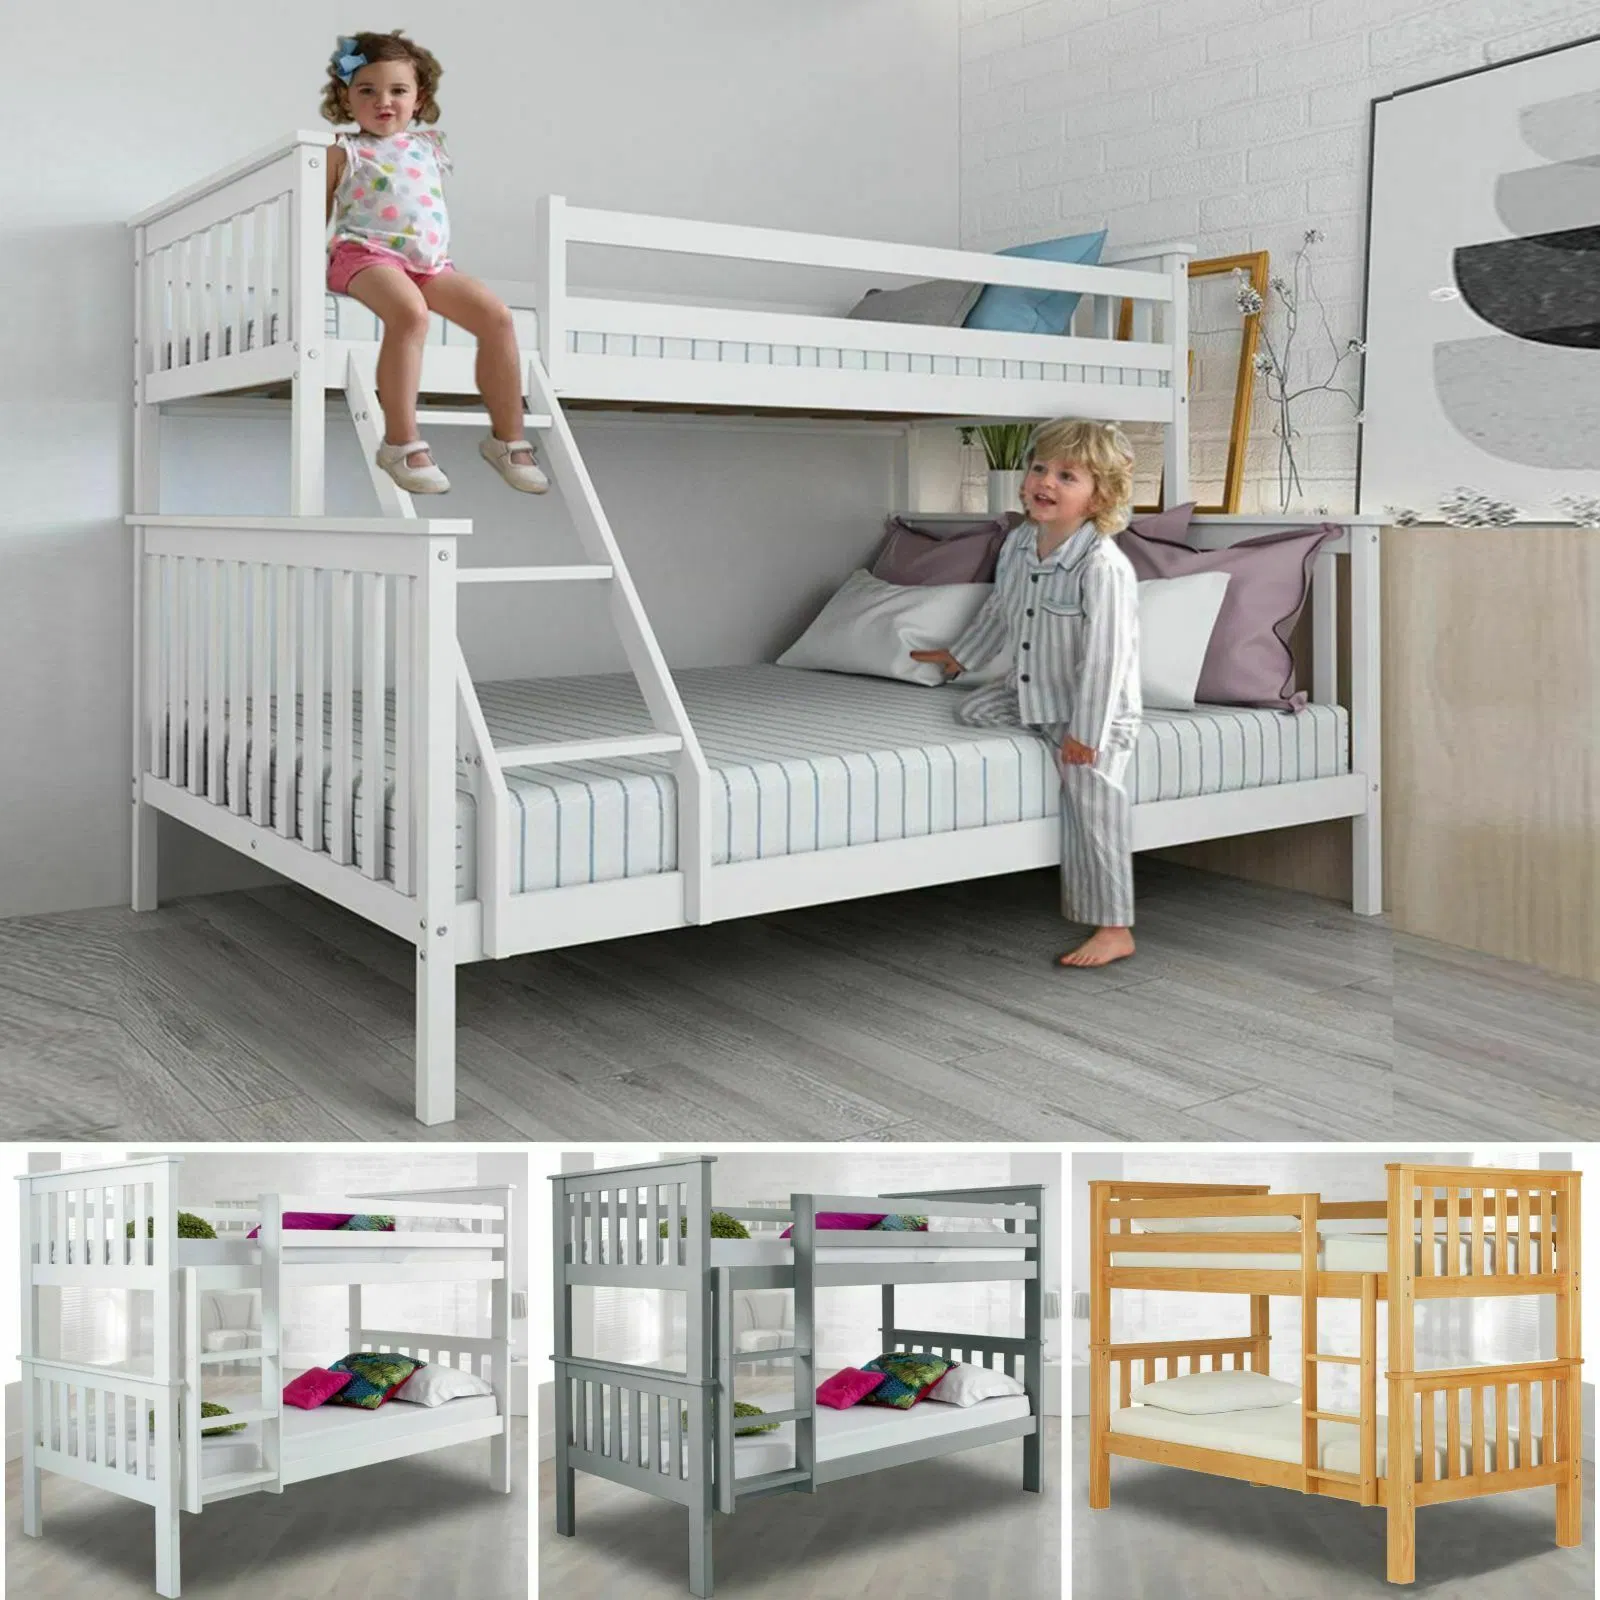 OEM Китай ODM Детская мебель спальни двухъярусная кровать Деревянная Детские кровати